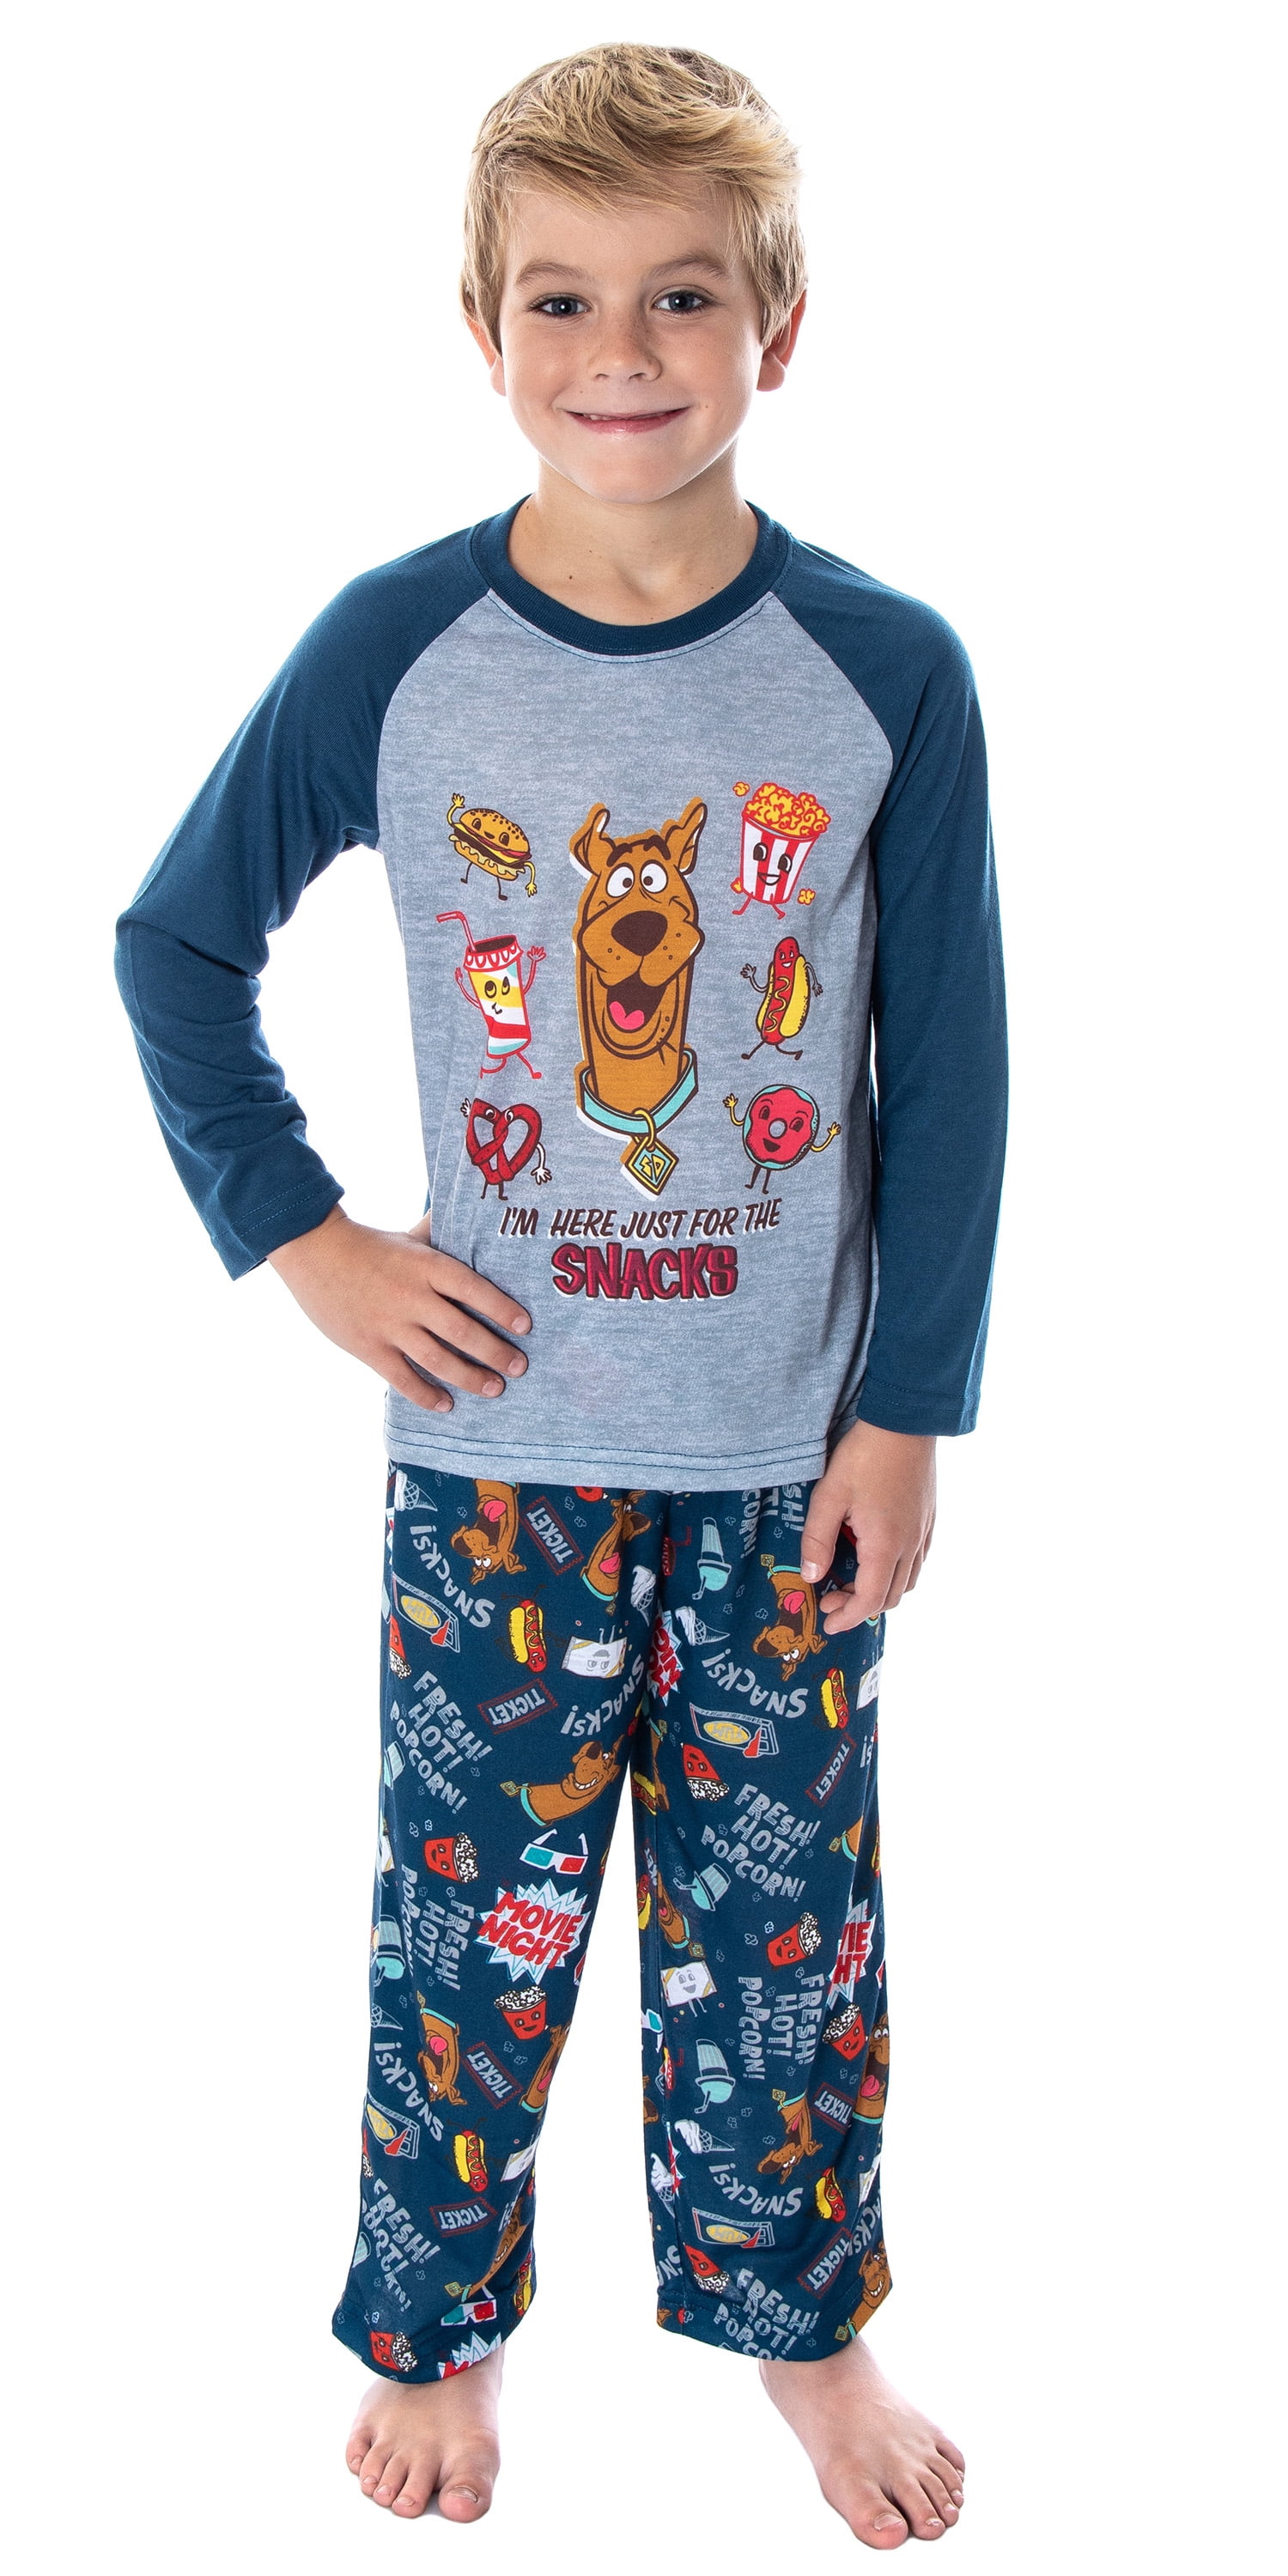 2PCS/SET Kids Boys Ironman Sleepwear Nightwear Pajamas Pj's Matching Sets 1-8Y 